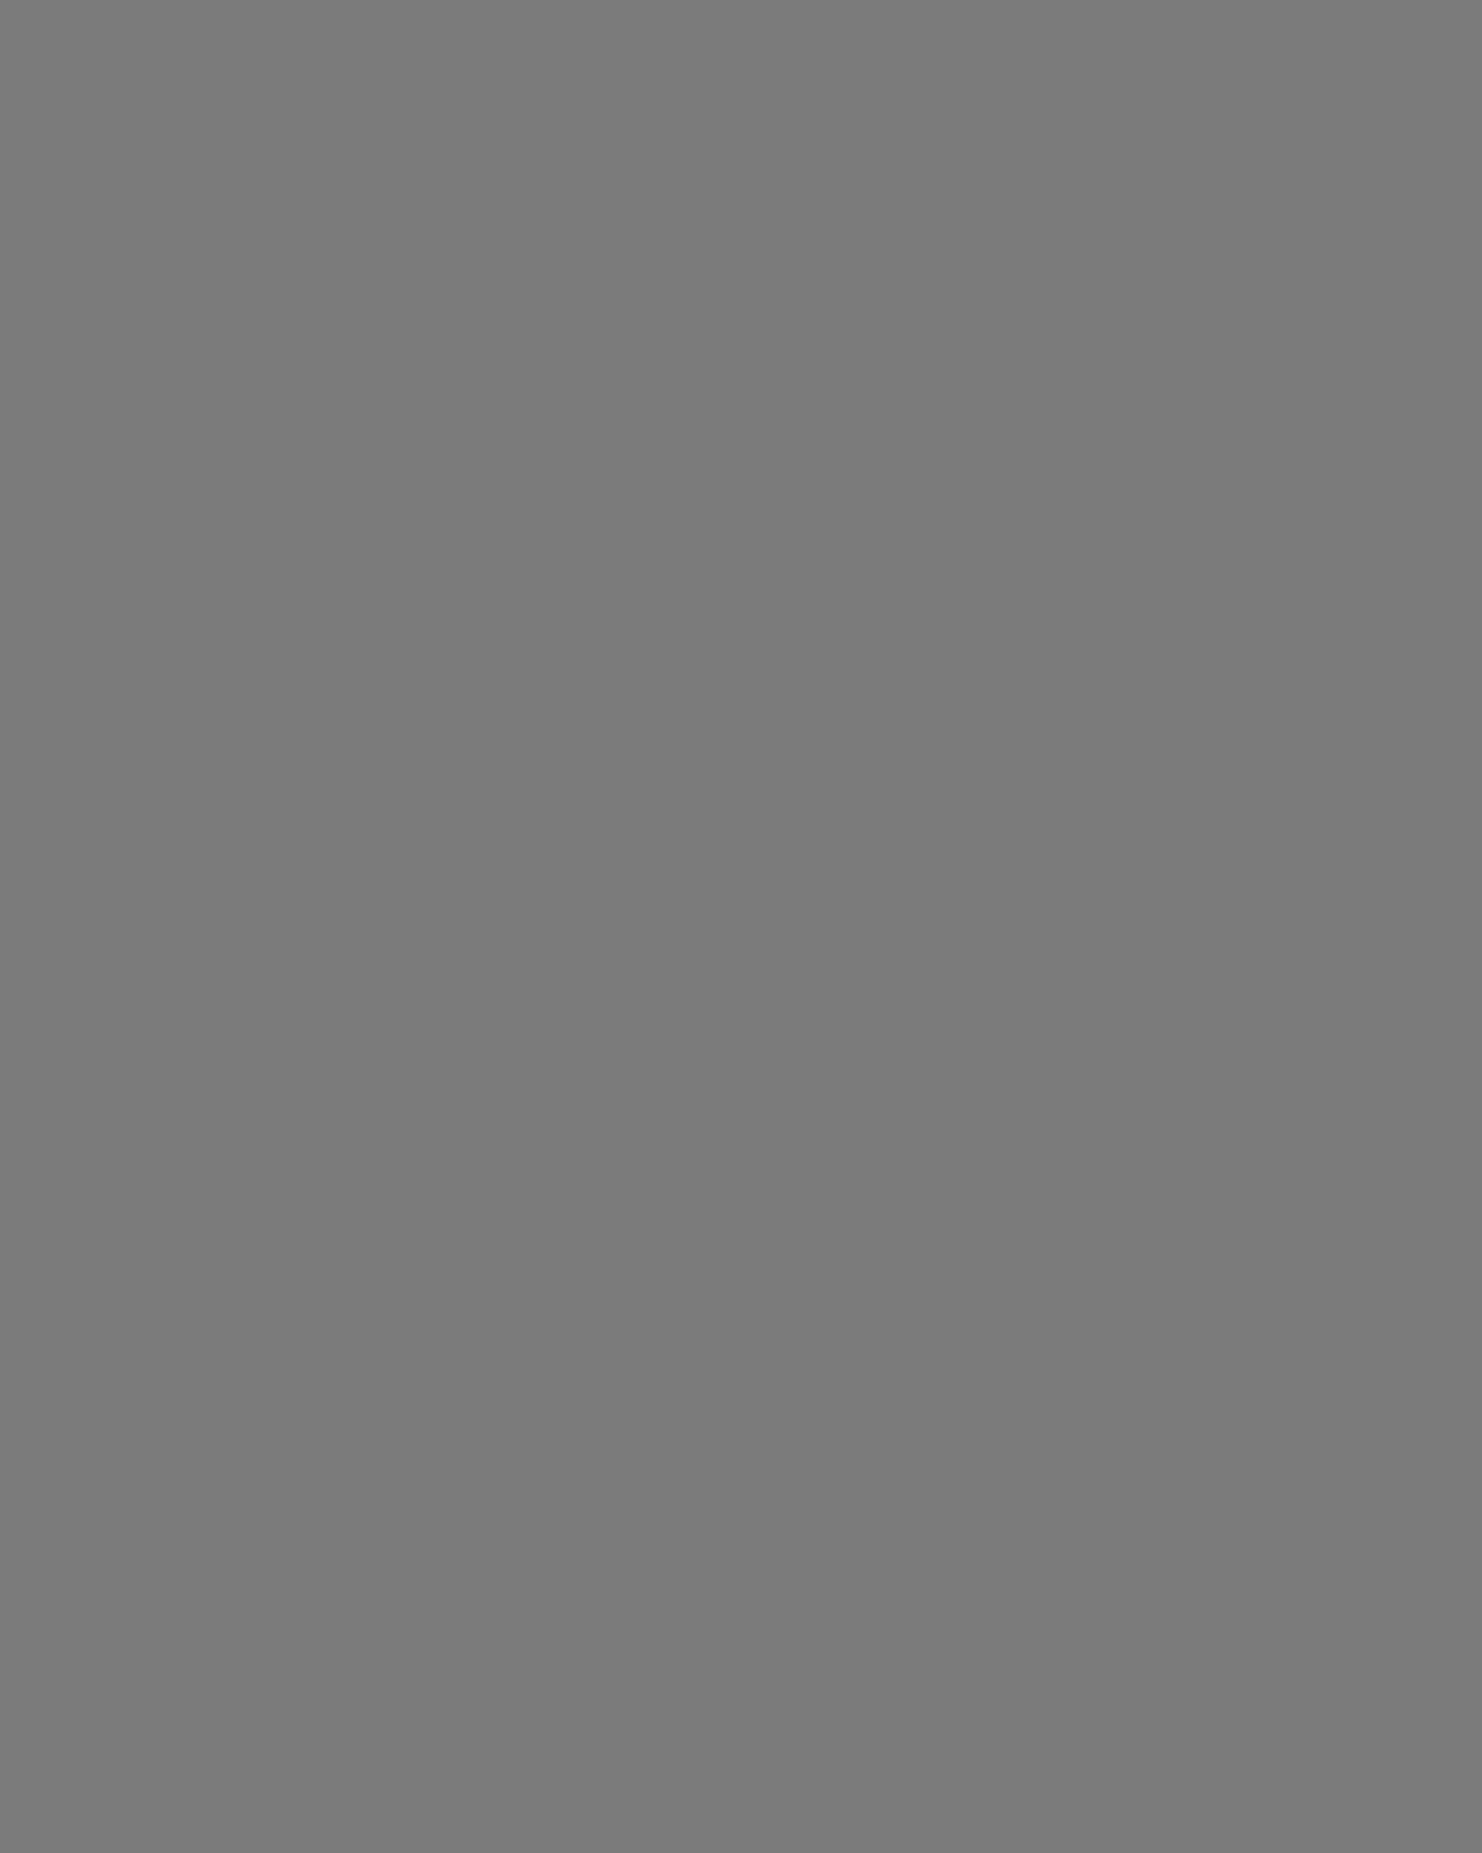 Николай Островский (слева) выступает по радио. Фотография: Виктор Клюшкин / ИТАР-ТАСС / Государственный литературно-мемориальный музей Н.А. Островского, Сочи